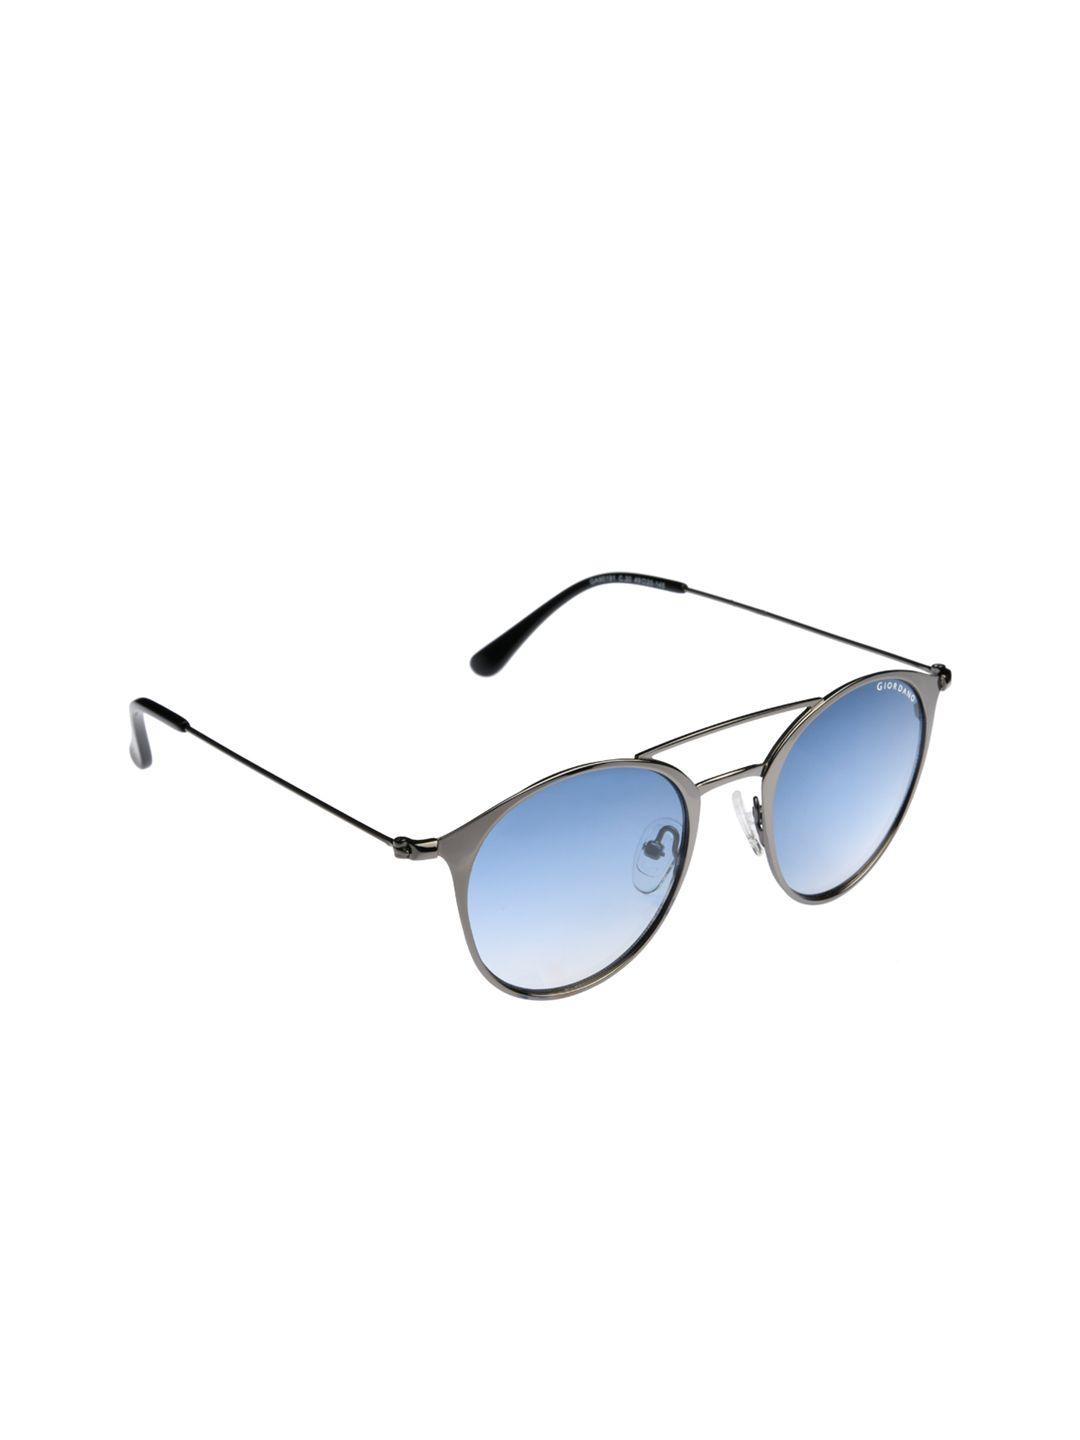 giordano-men-oval-sunglasses-ga90199c95